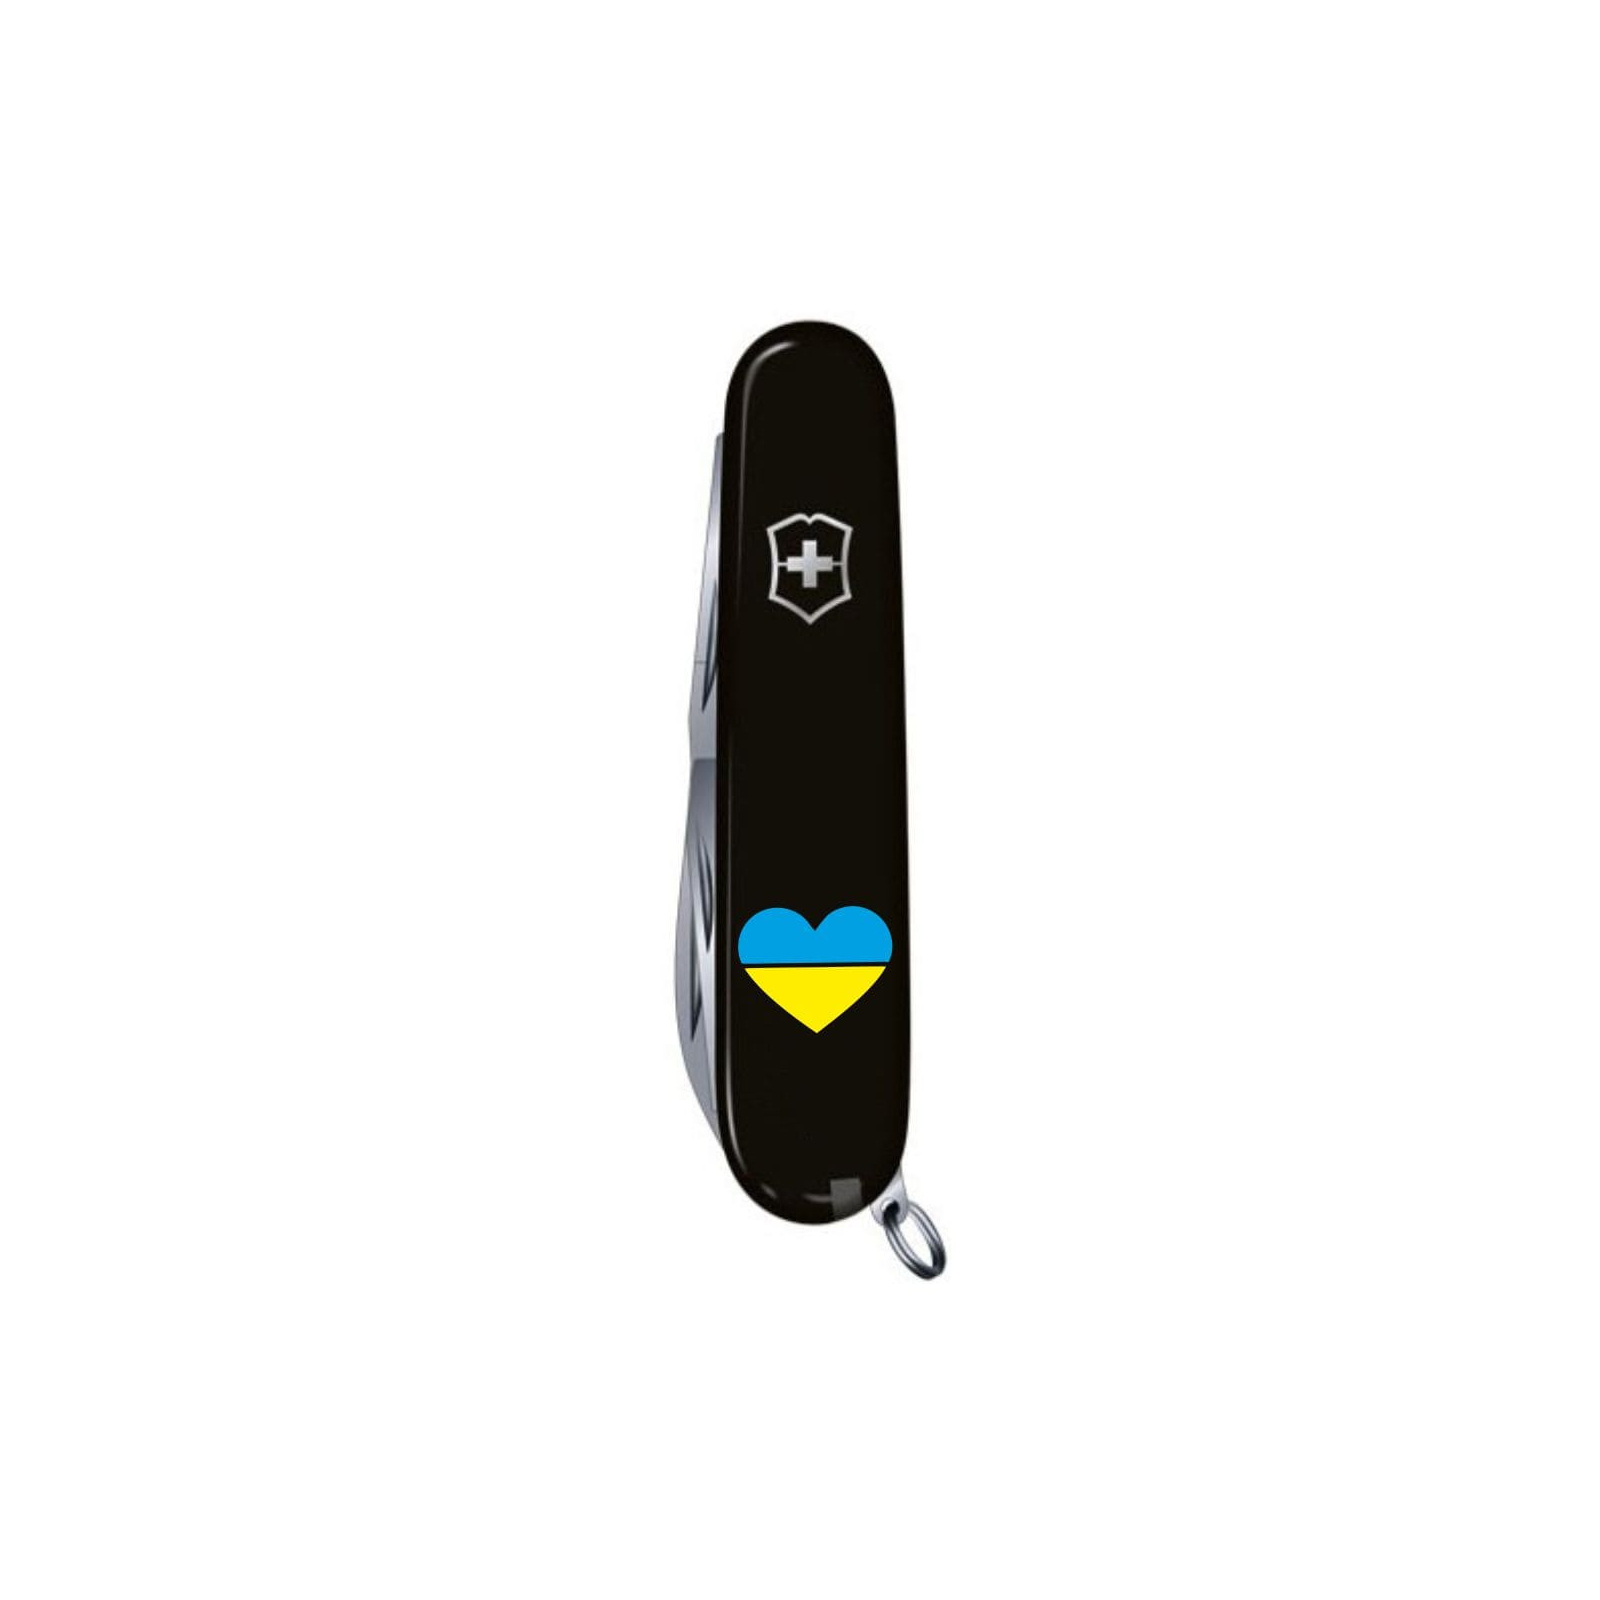 Нож Victorinox Huntsman Ukraine 91 мм Синьо-жовтий (1.3713.2.8) изображение 5